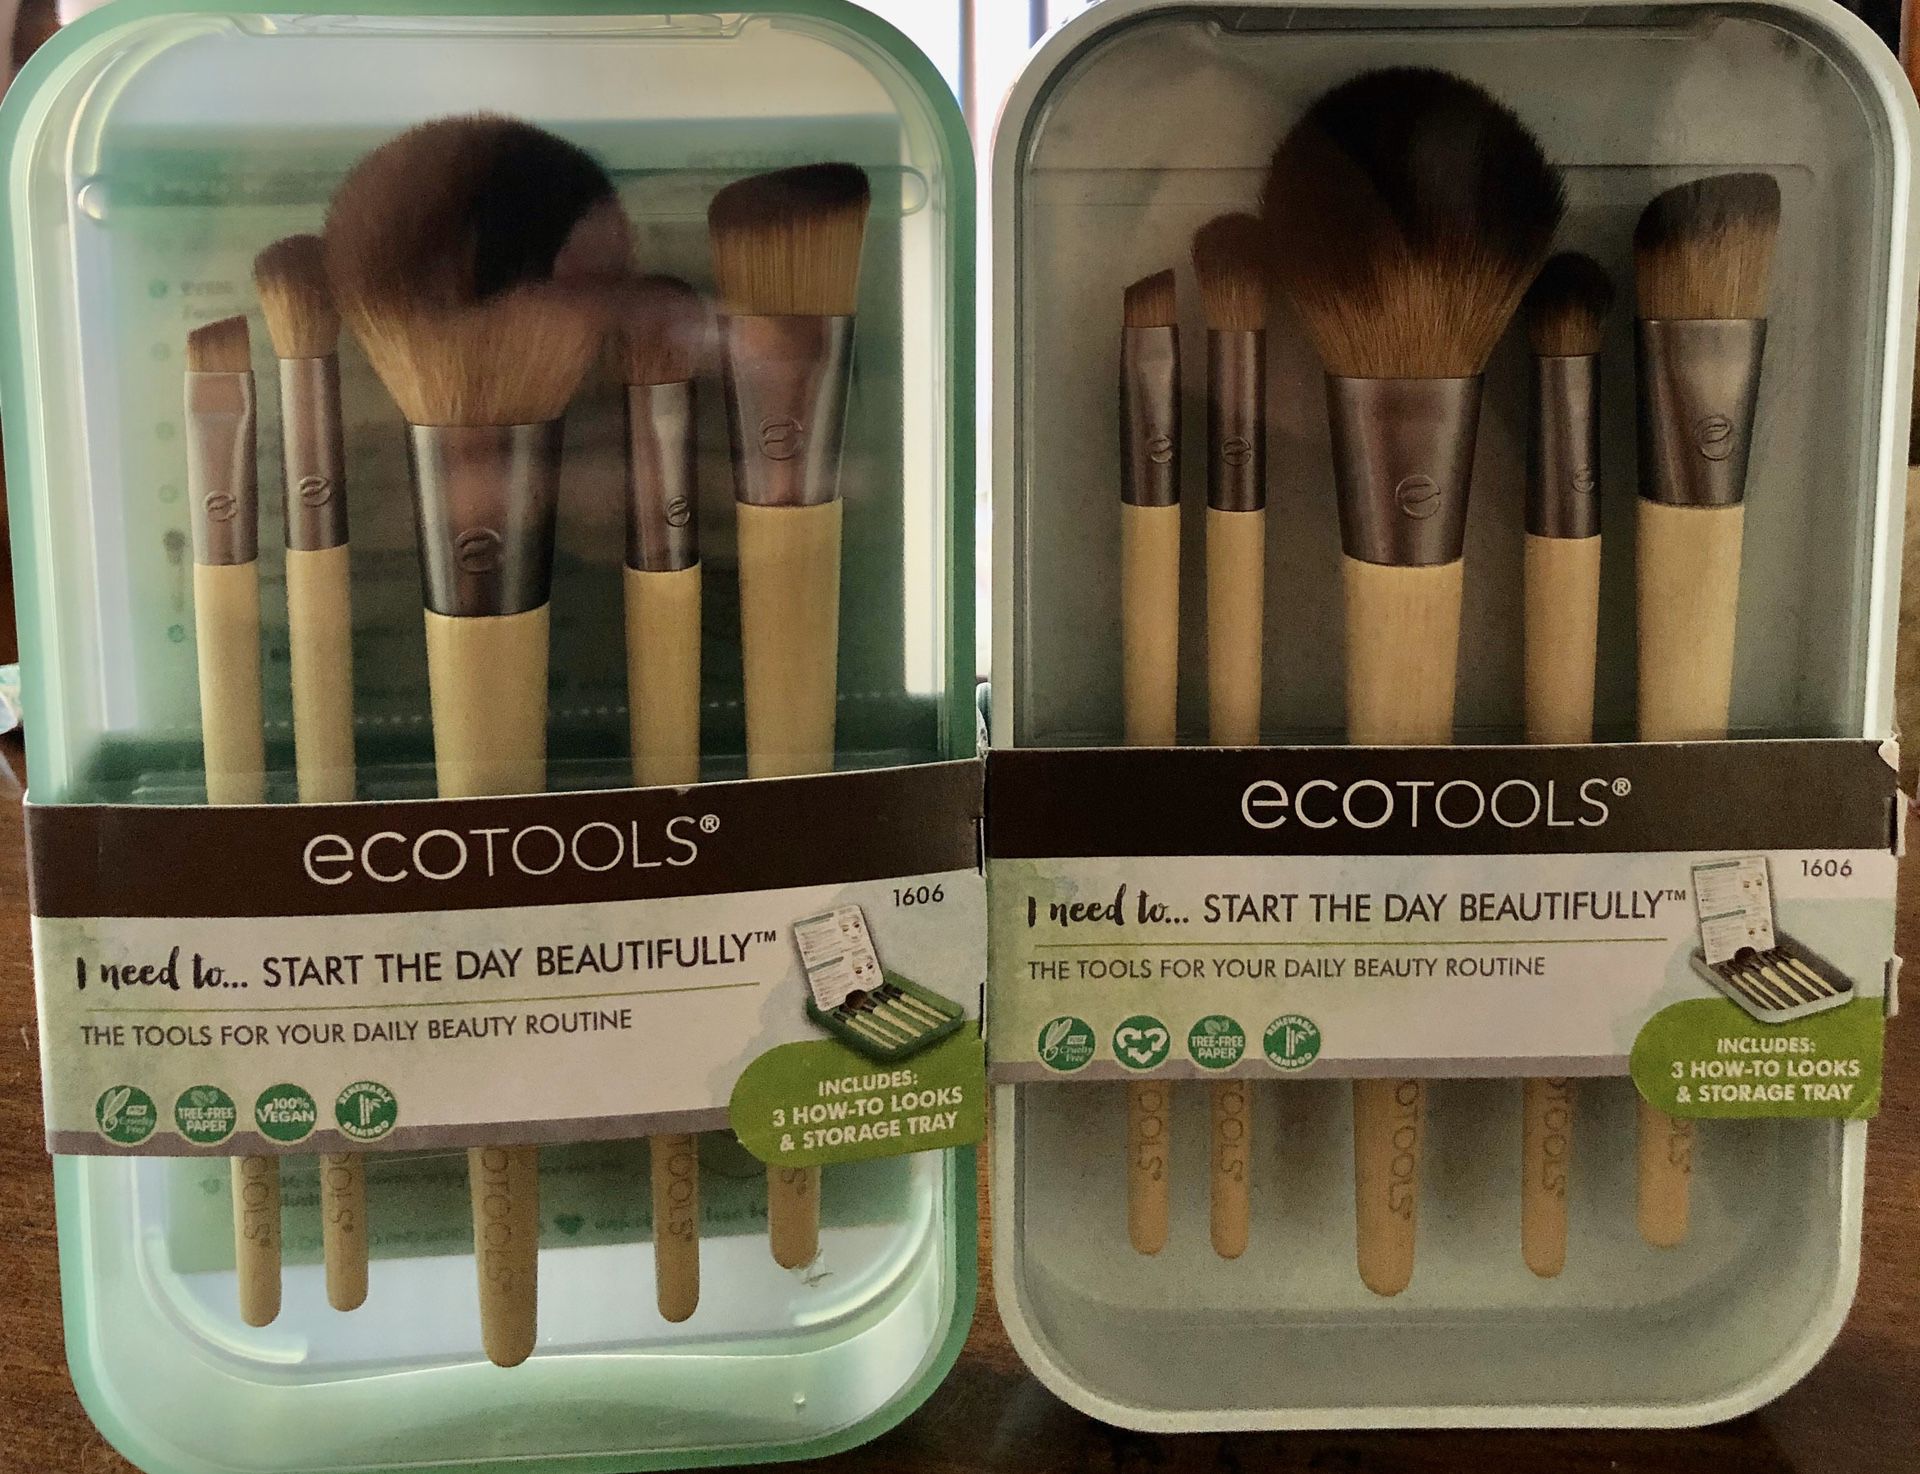 Echotools makeup brushes!!!